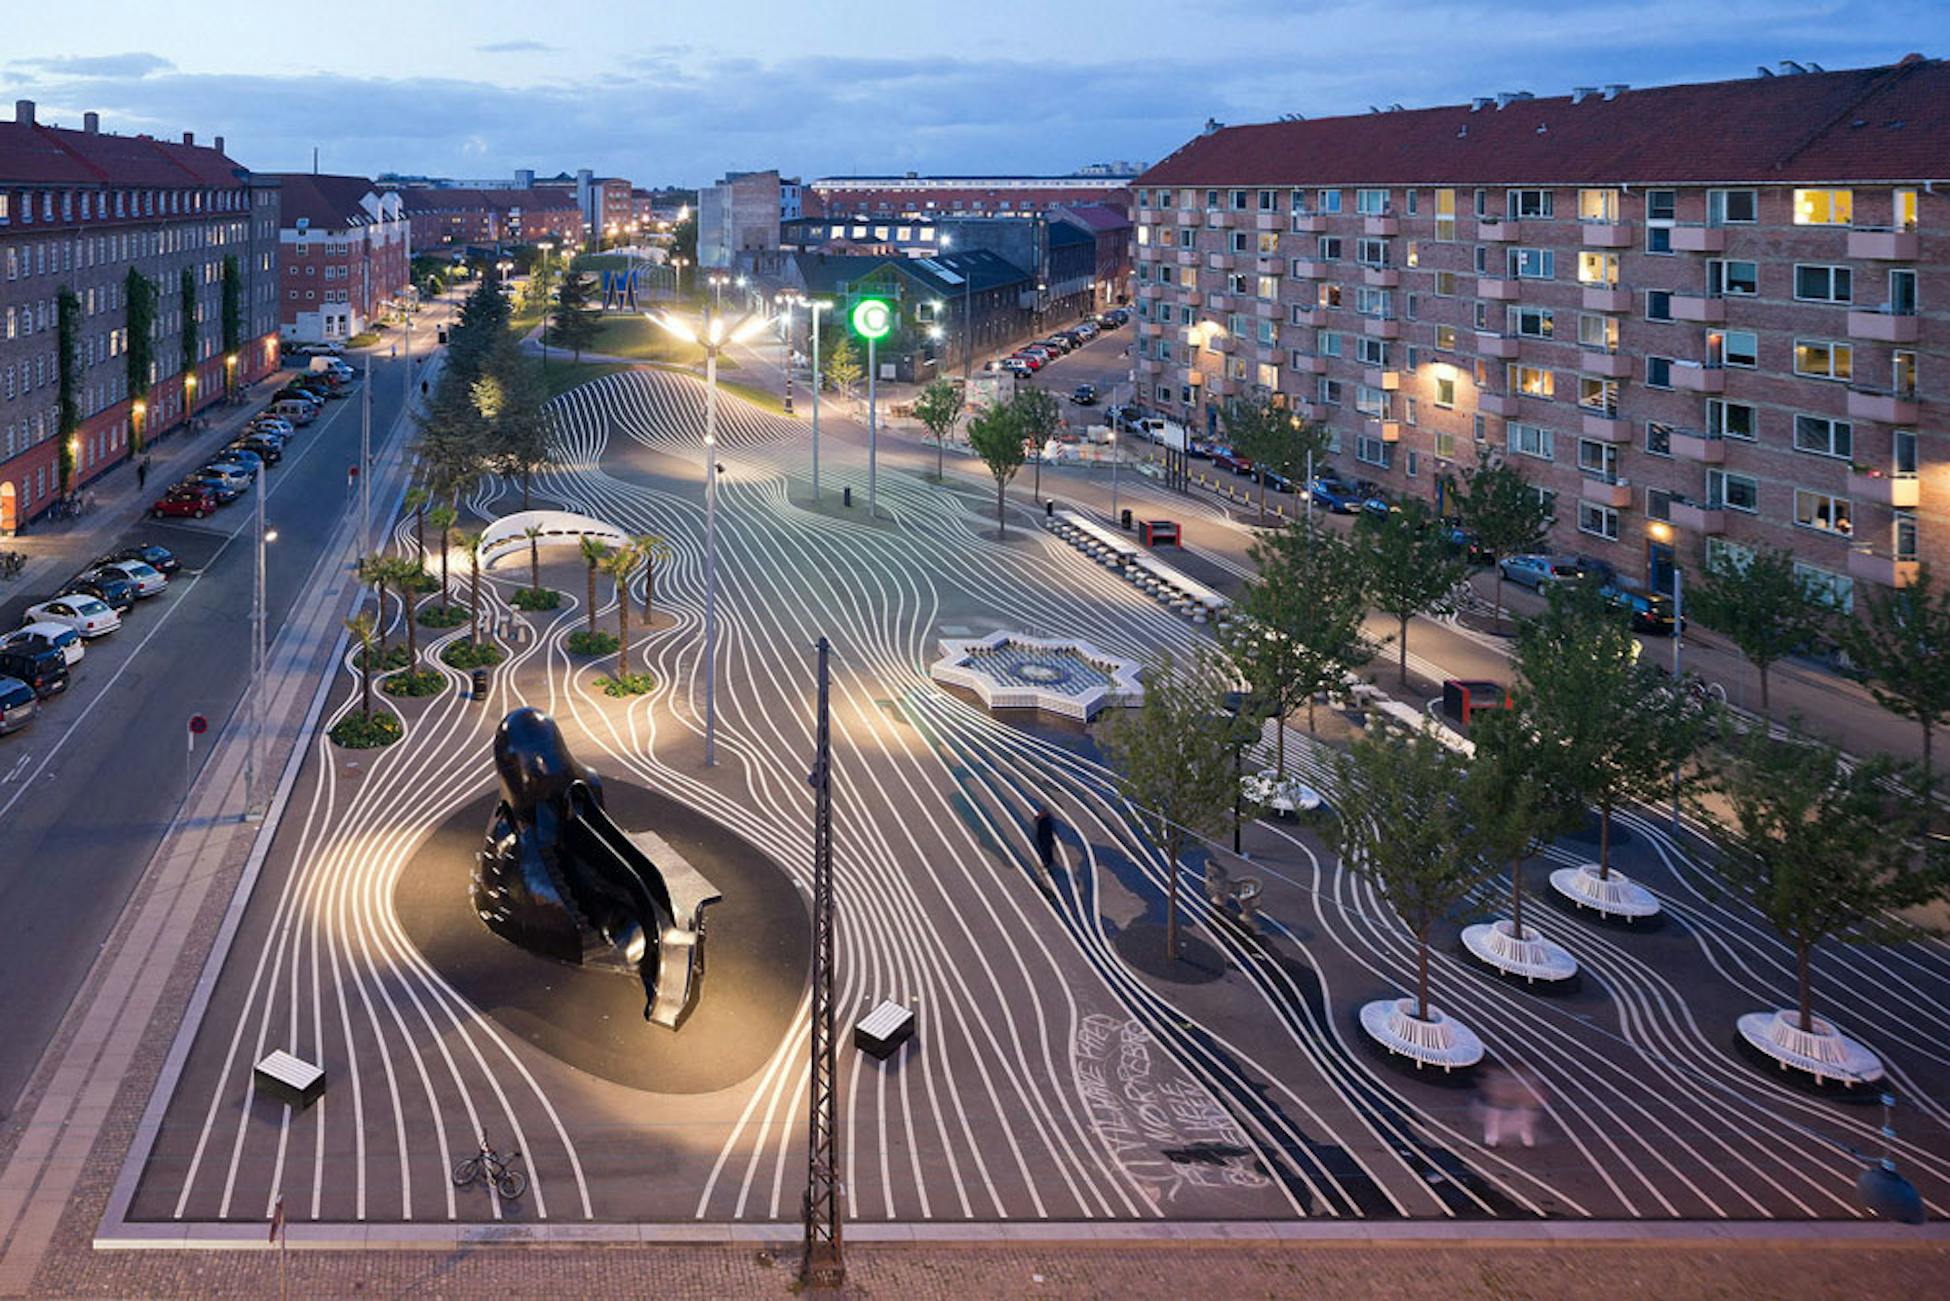 Выбор общественных пространств. Superkilen-парк в Копенгагене. Площадь Суперкилен (Superkilen), Копенгаген. Superkilen в Копенгагене.